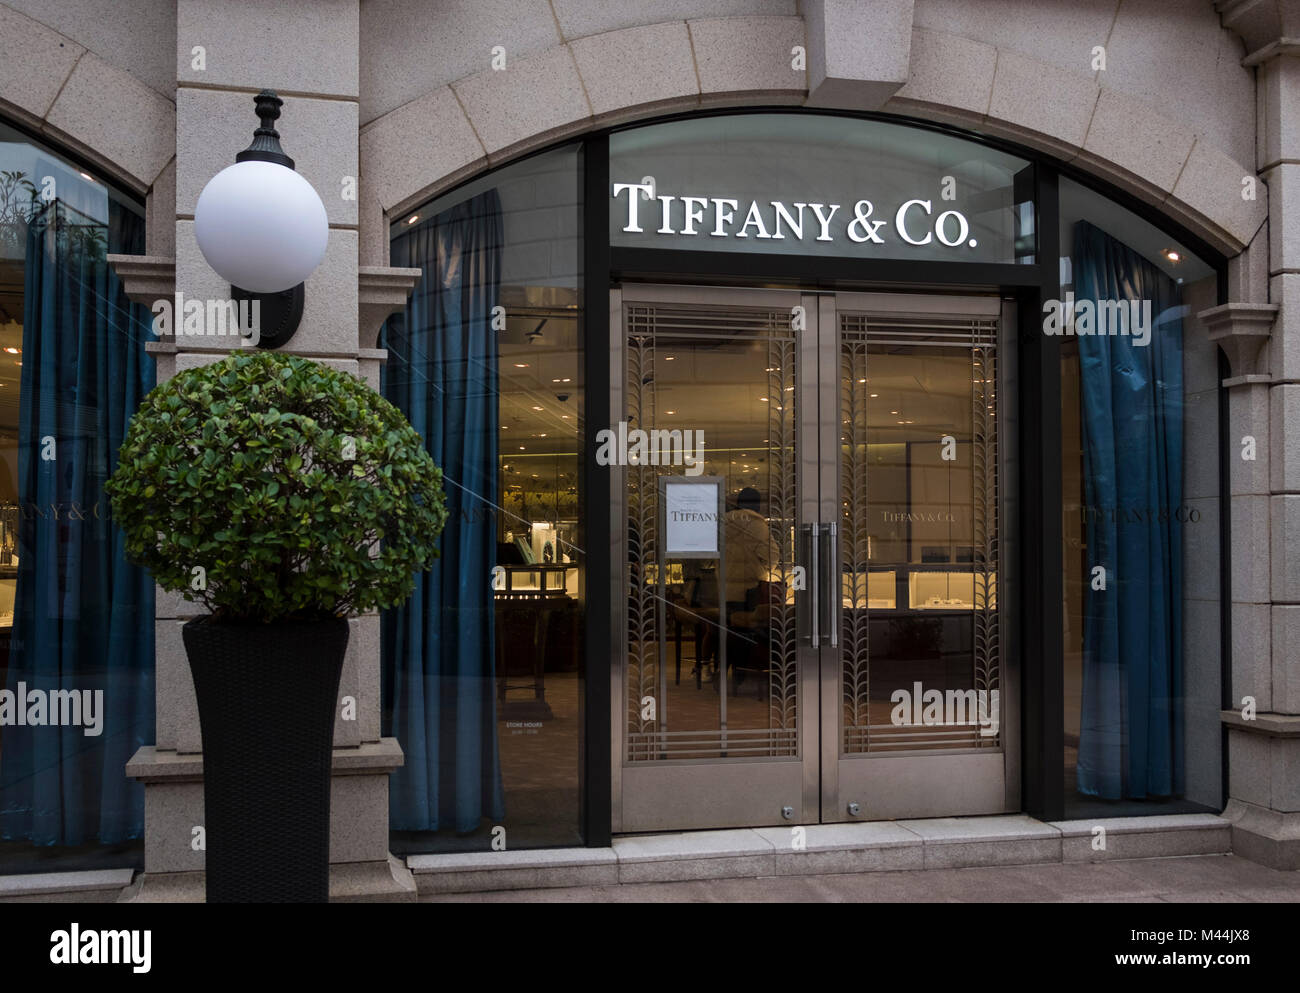 Hongkong - Februar 4, 2018: Tiffany & Co. Retail Mall in Hong Kon. Tiffany's ist ein Luxus Schmuck und Fachhändler mit Sitz in New York C Stockfoto